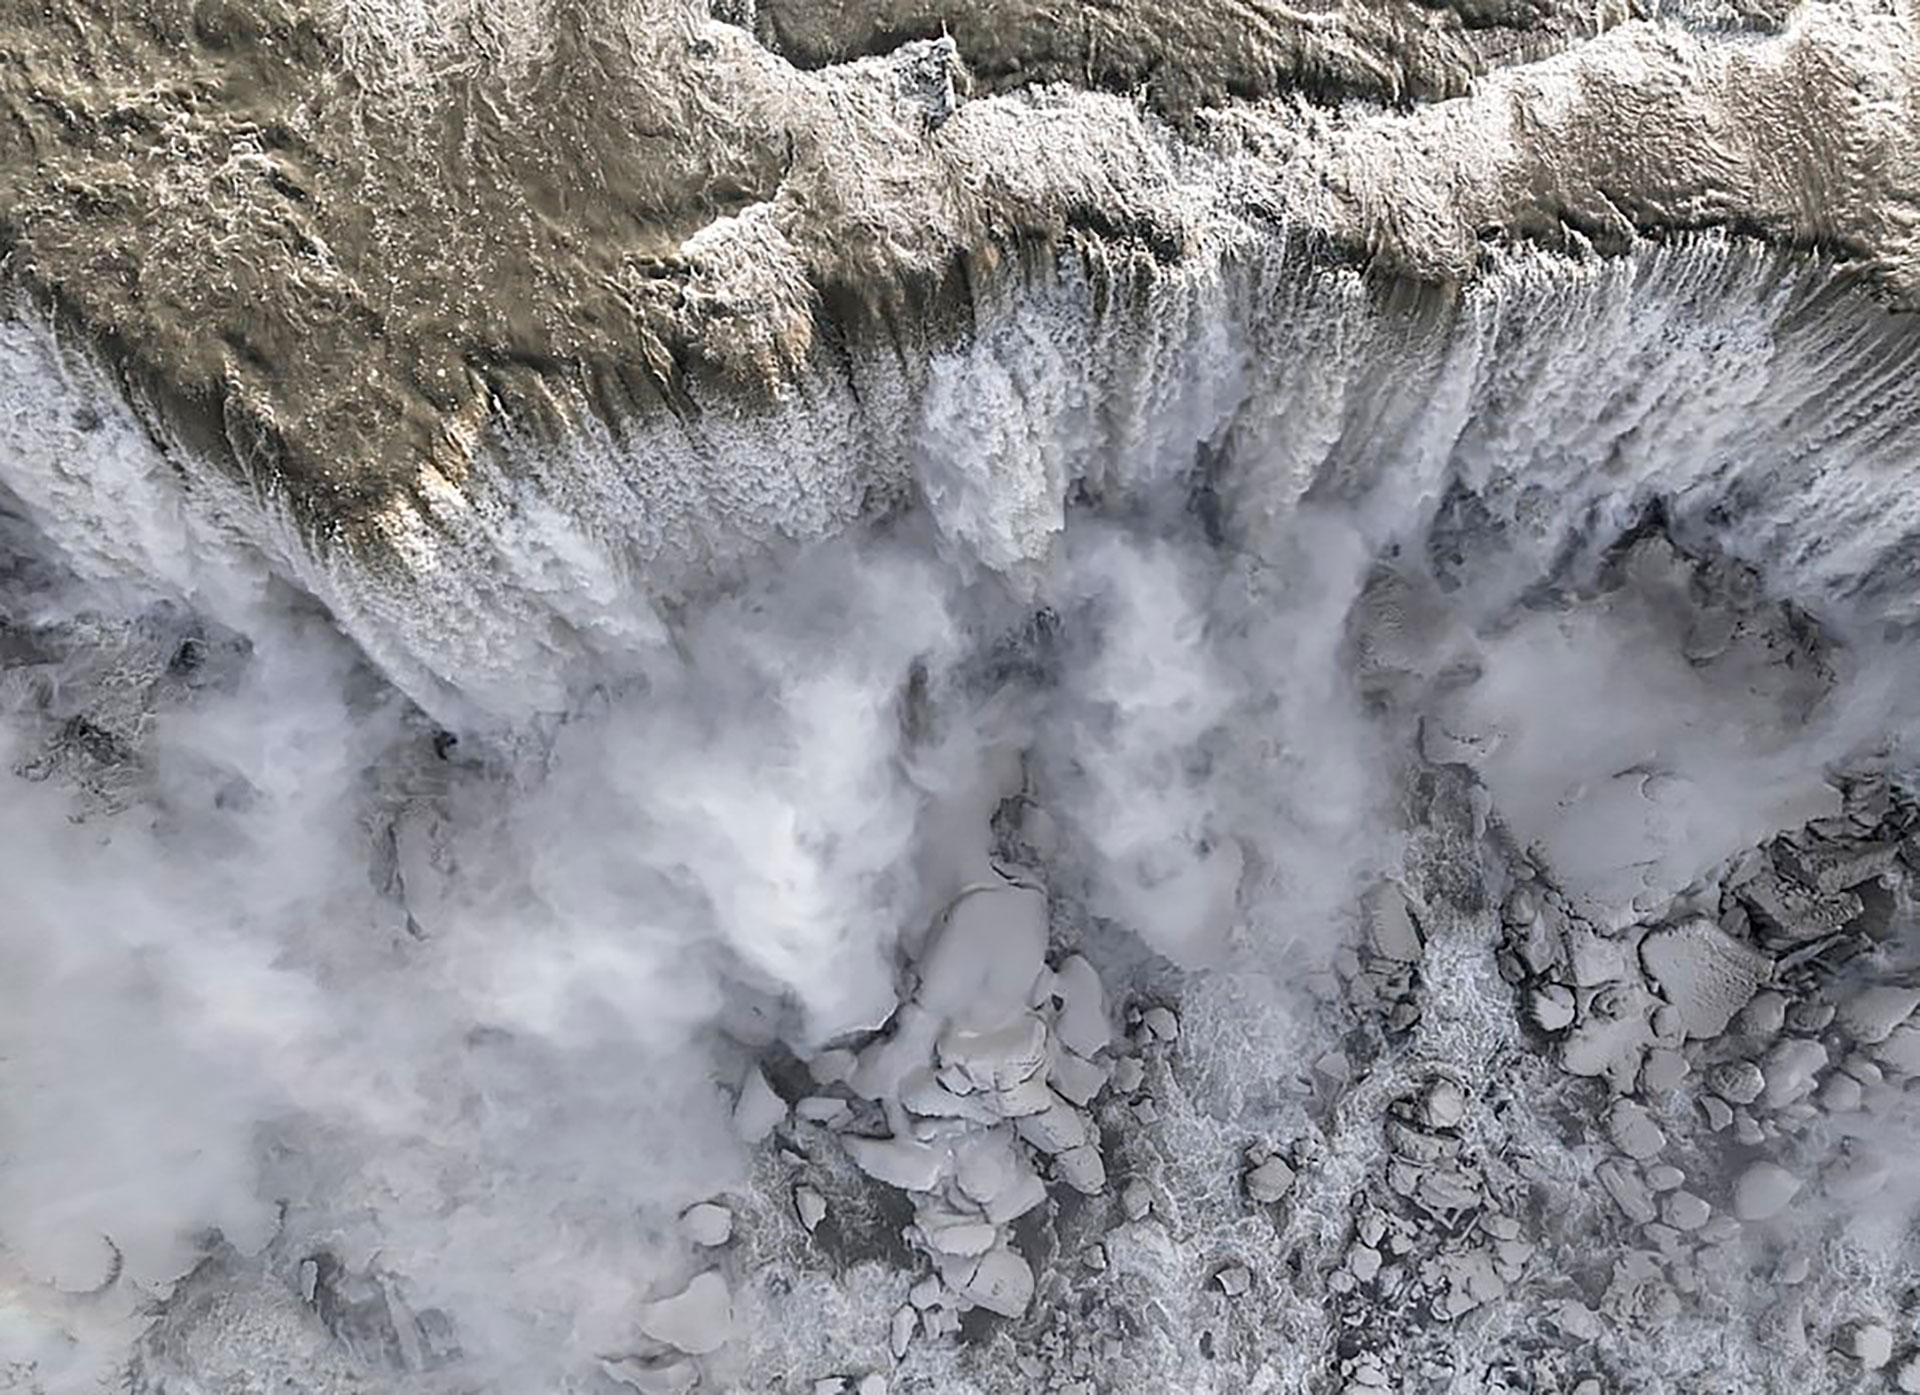 Una impactante imagen aérea de las cataratas del Niágara, en el límite de los estados de Nueva York en Estados Unidos y Ontario, en Canadá (Anadolu Agency via Getty Images)